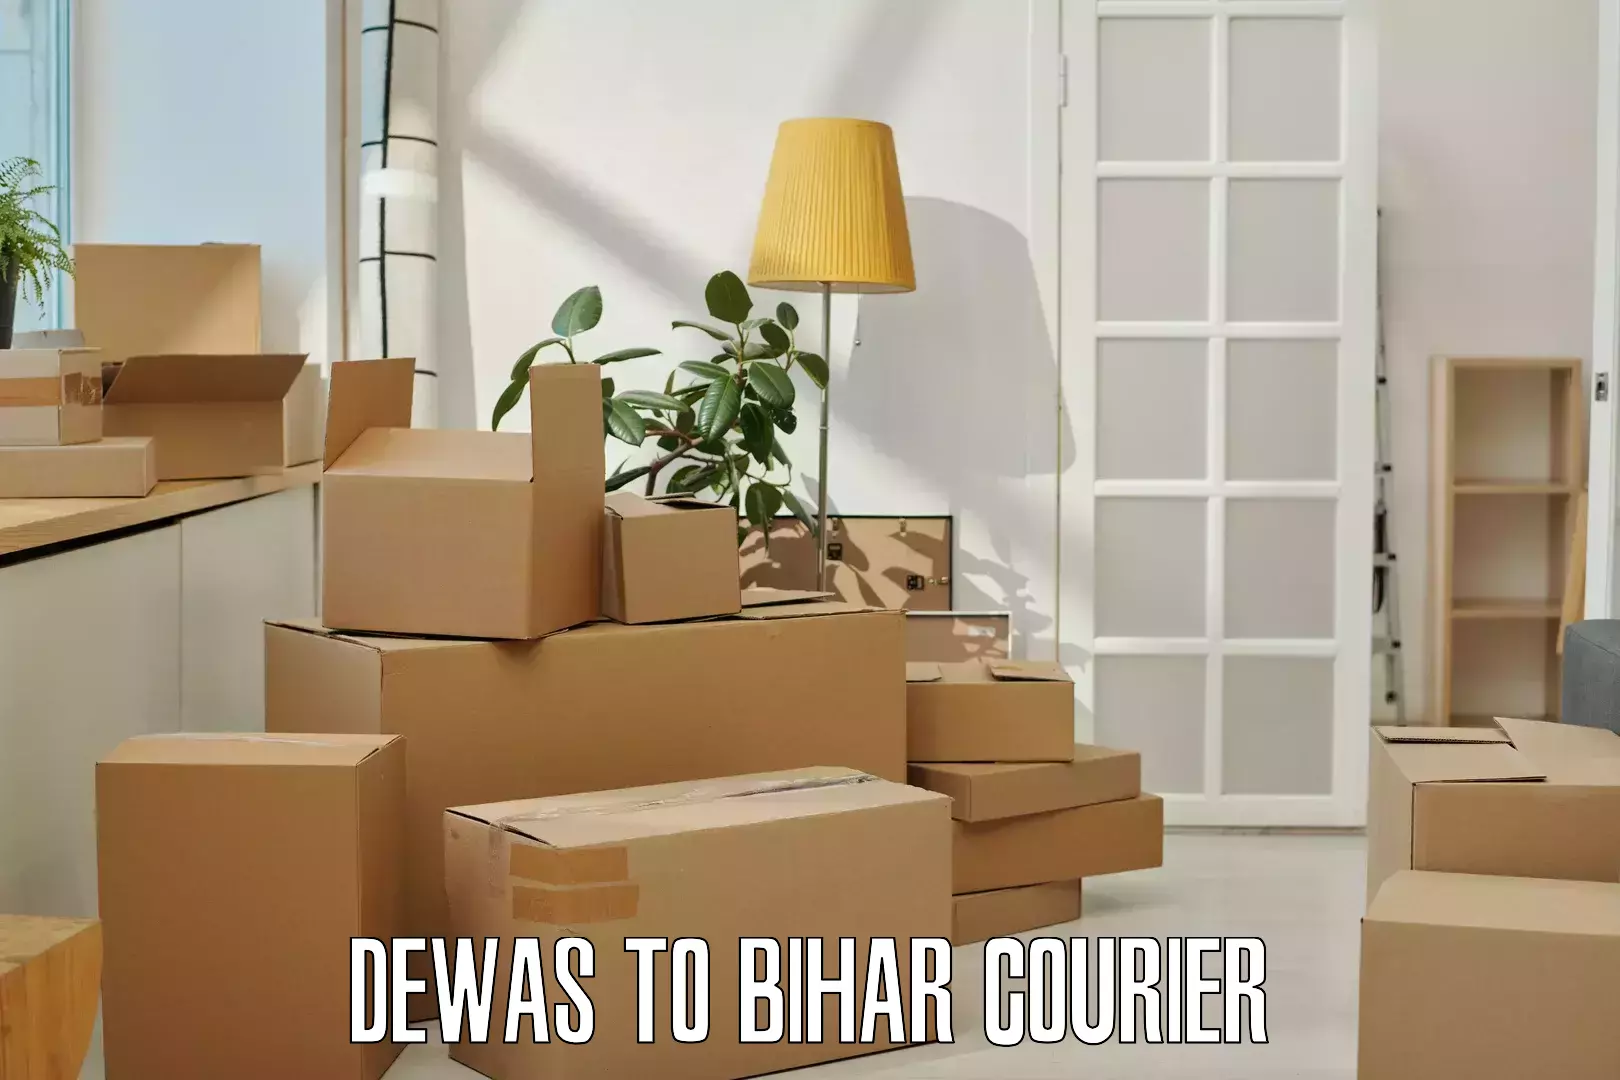 Courier service comparison Dewas to IIIT Bhagalpur